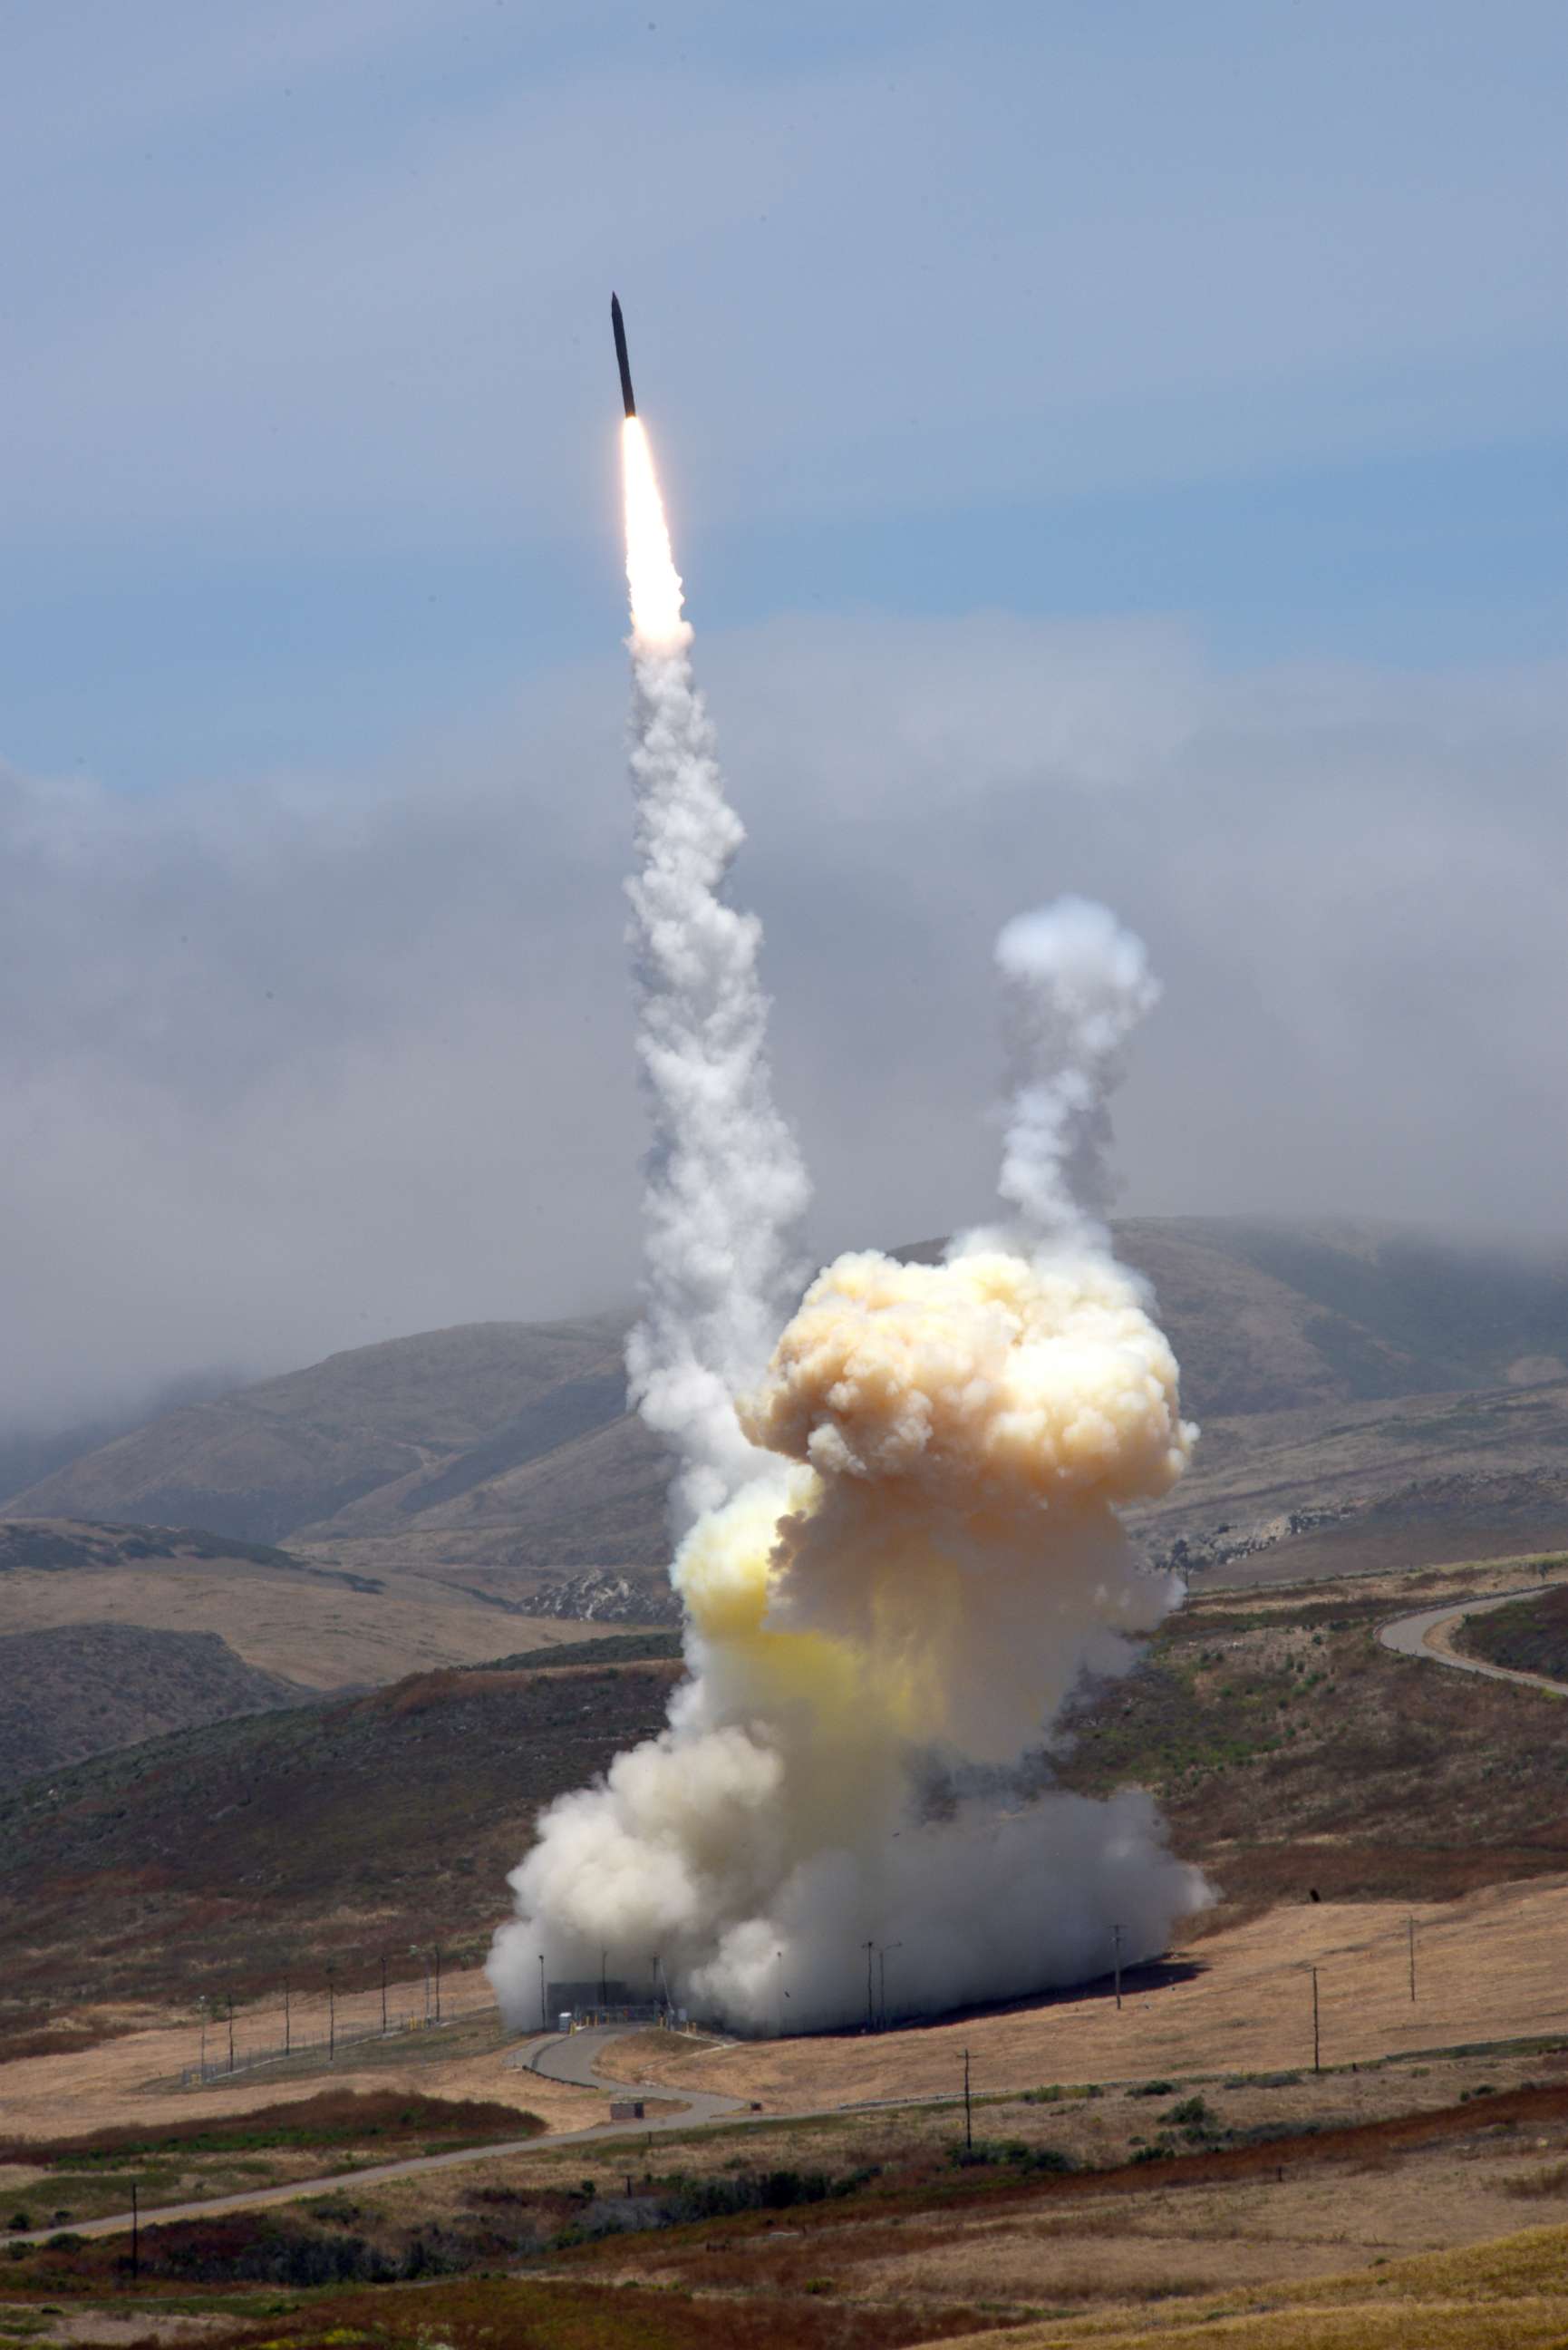 PHOTO: Missile interceptor test at Vandenberg Air Force base